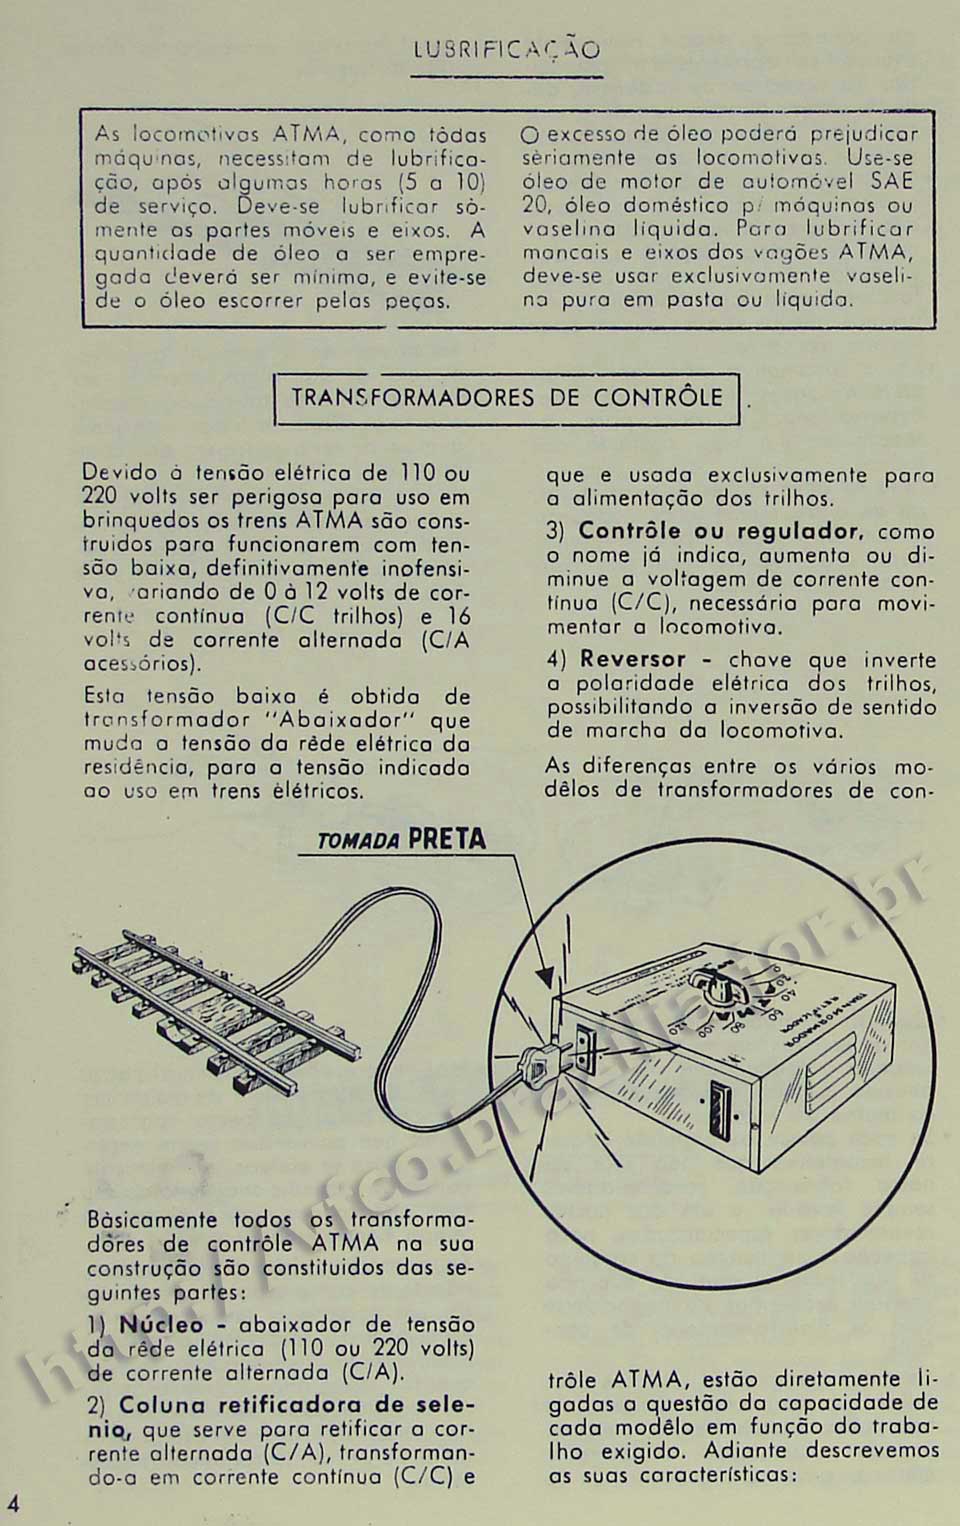 Lubrificação de locomotivas e características dos controladores, na Página 4 do manual "Como montar e operar seu trem elétrico Atma" para maquete de ferreomodelismo